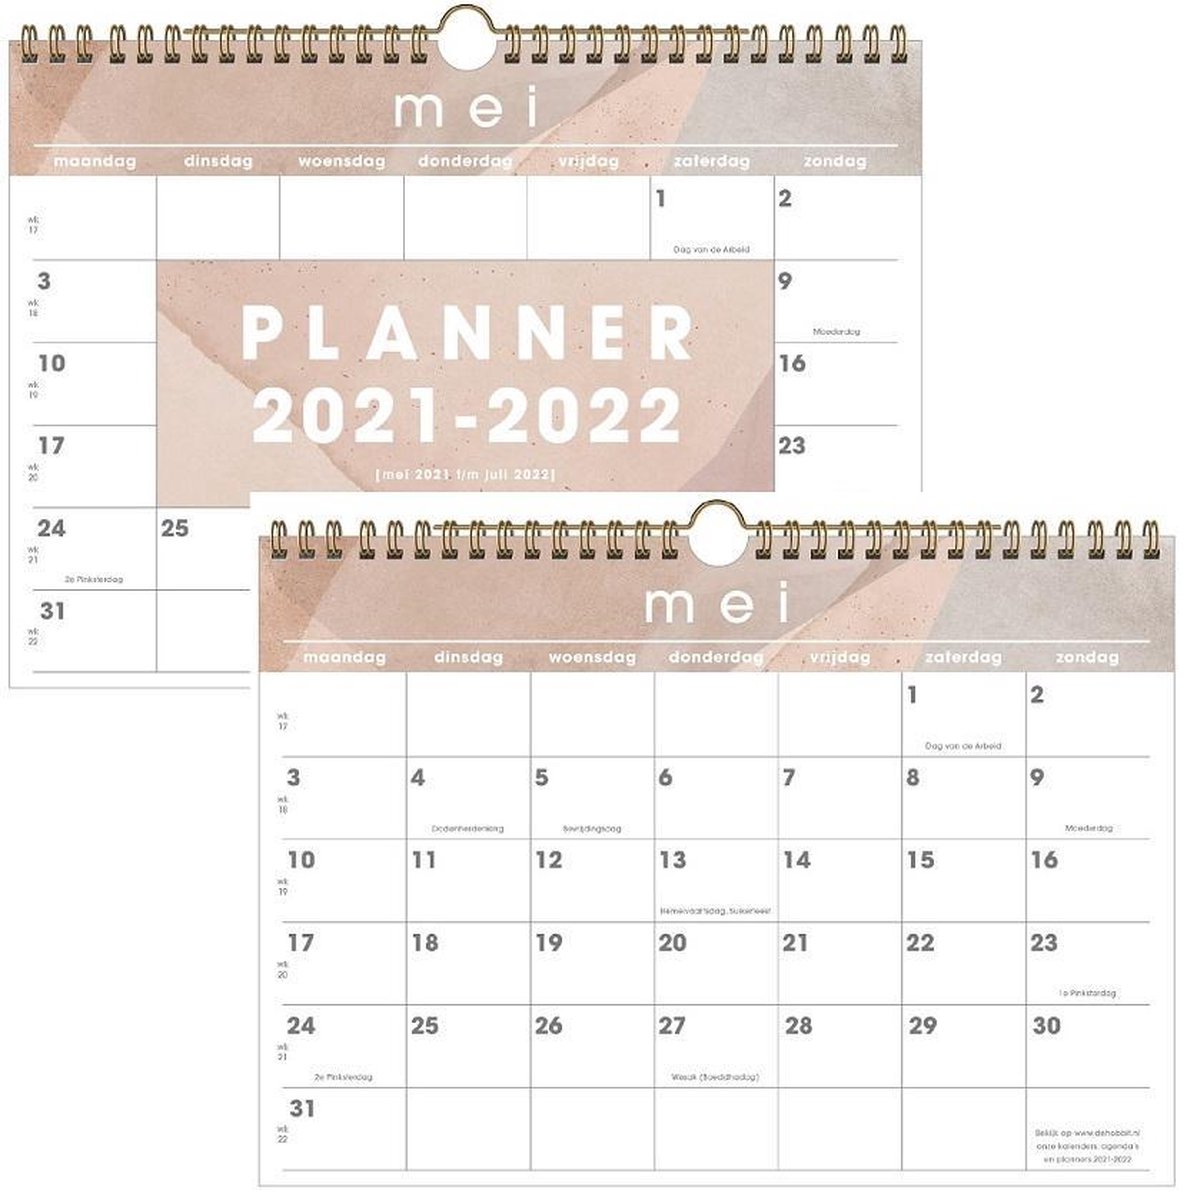 Hobbit schoolkalender 2021-2022 - MAANDKALENDER D1 - ringband - omslag - maandoverzicht - A4 formaat - roze grijs - De Hobbit